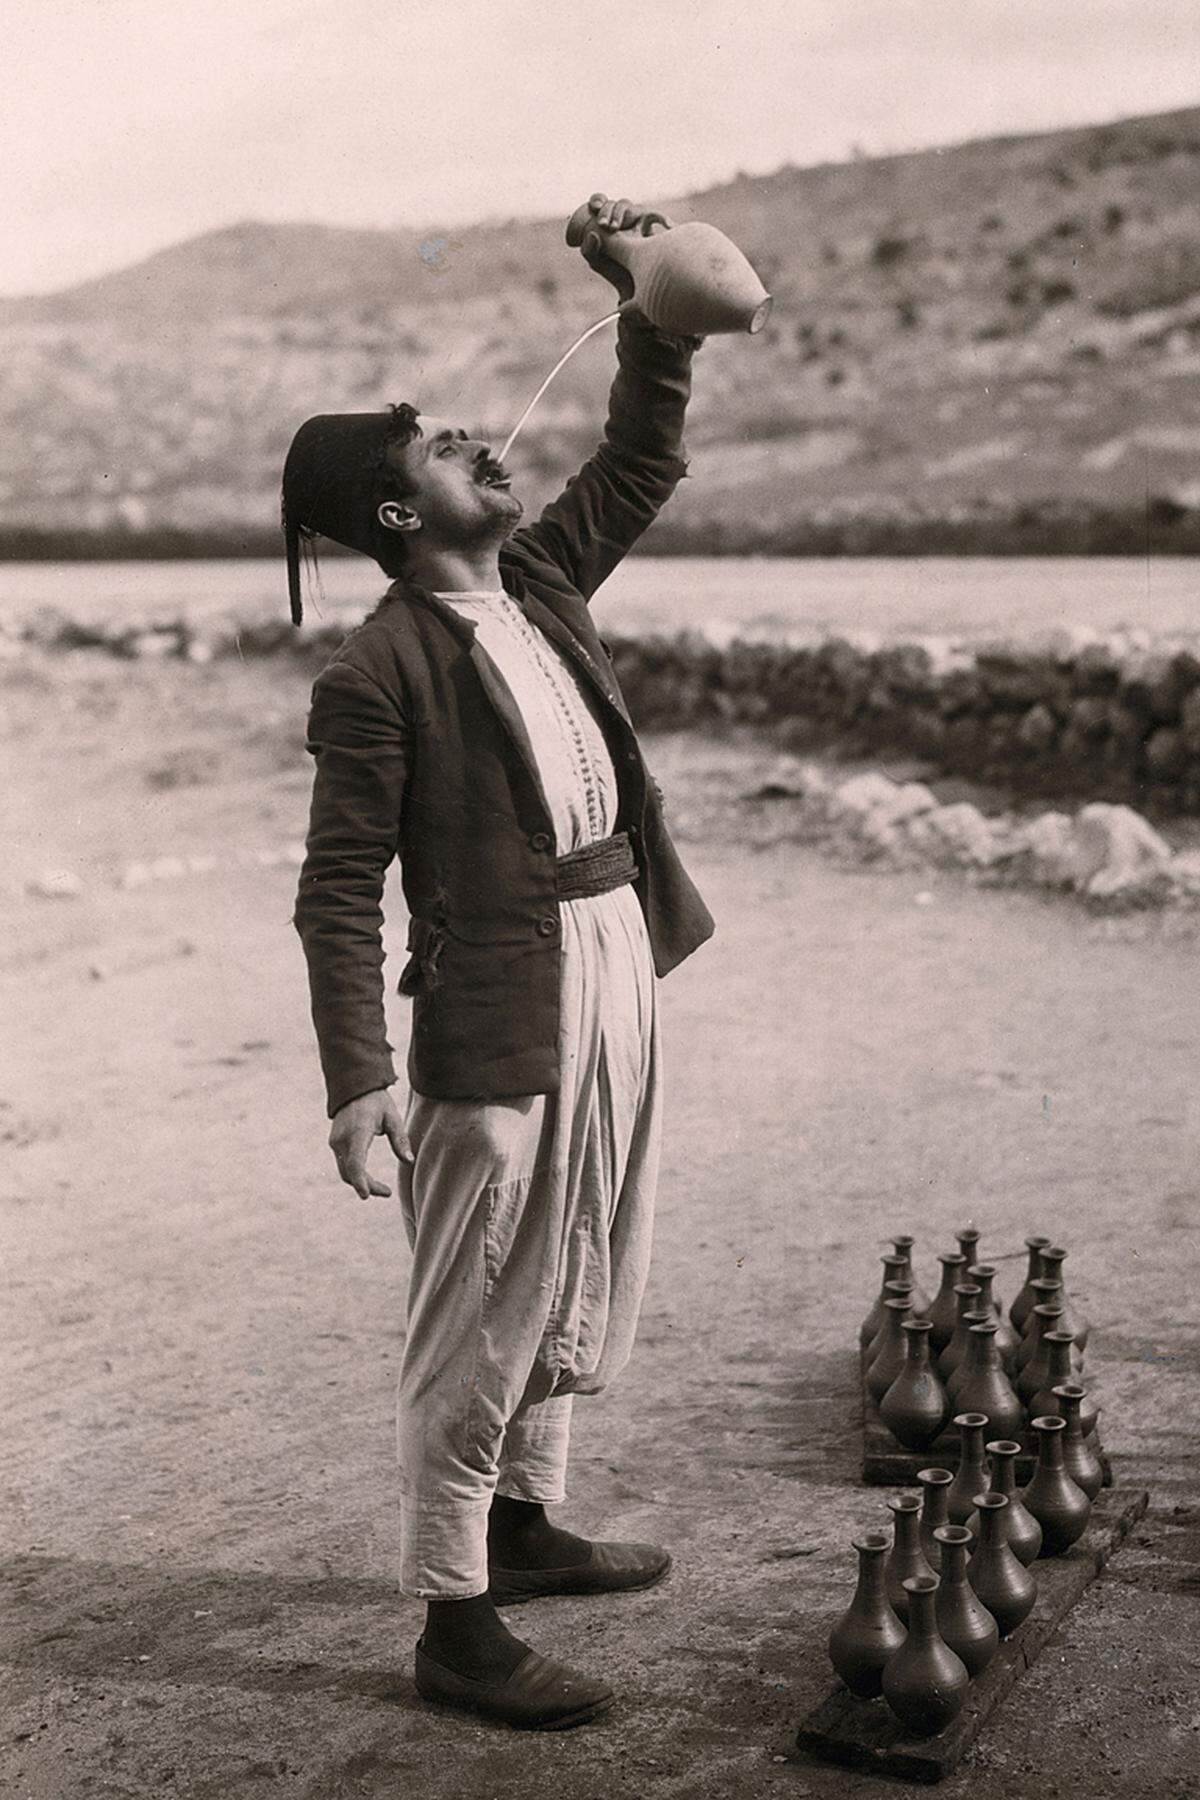 Maynard Owen Williams: Mann an der Straße von Beirut nach Sidon, 1926 (c) National Geographic Image Collection